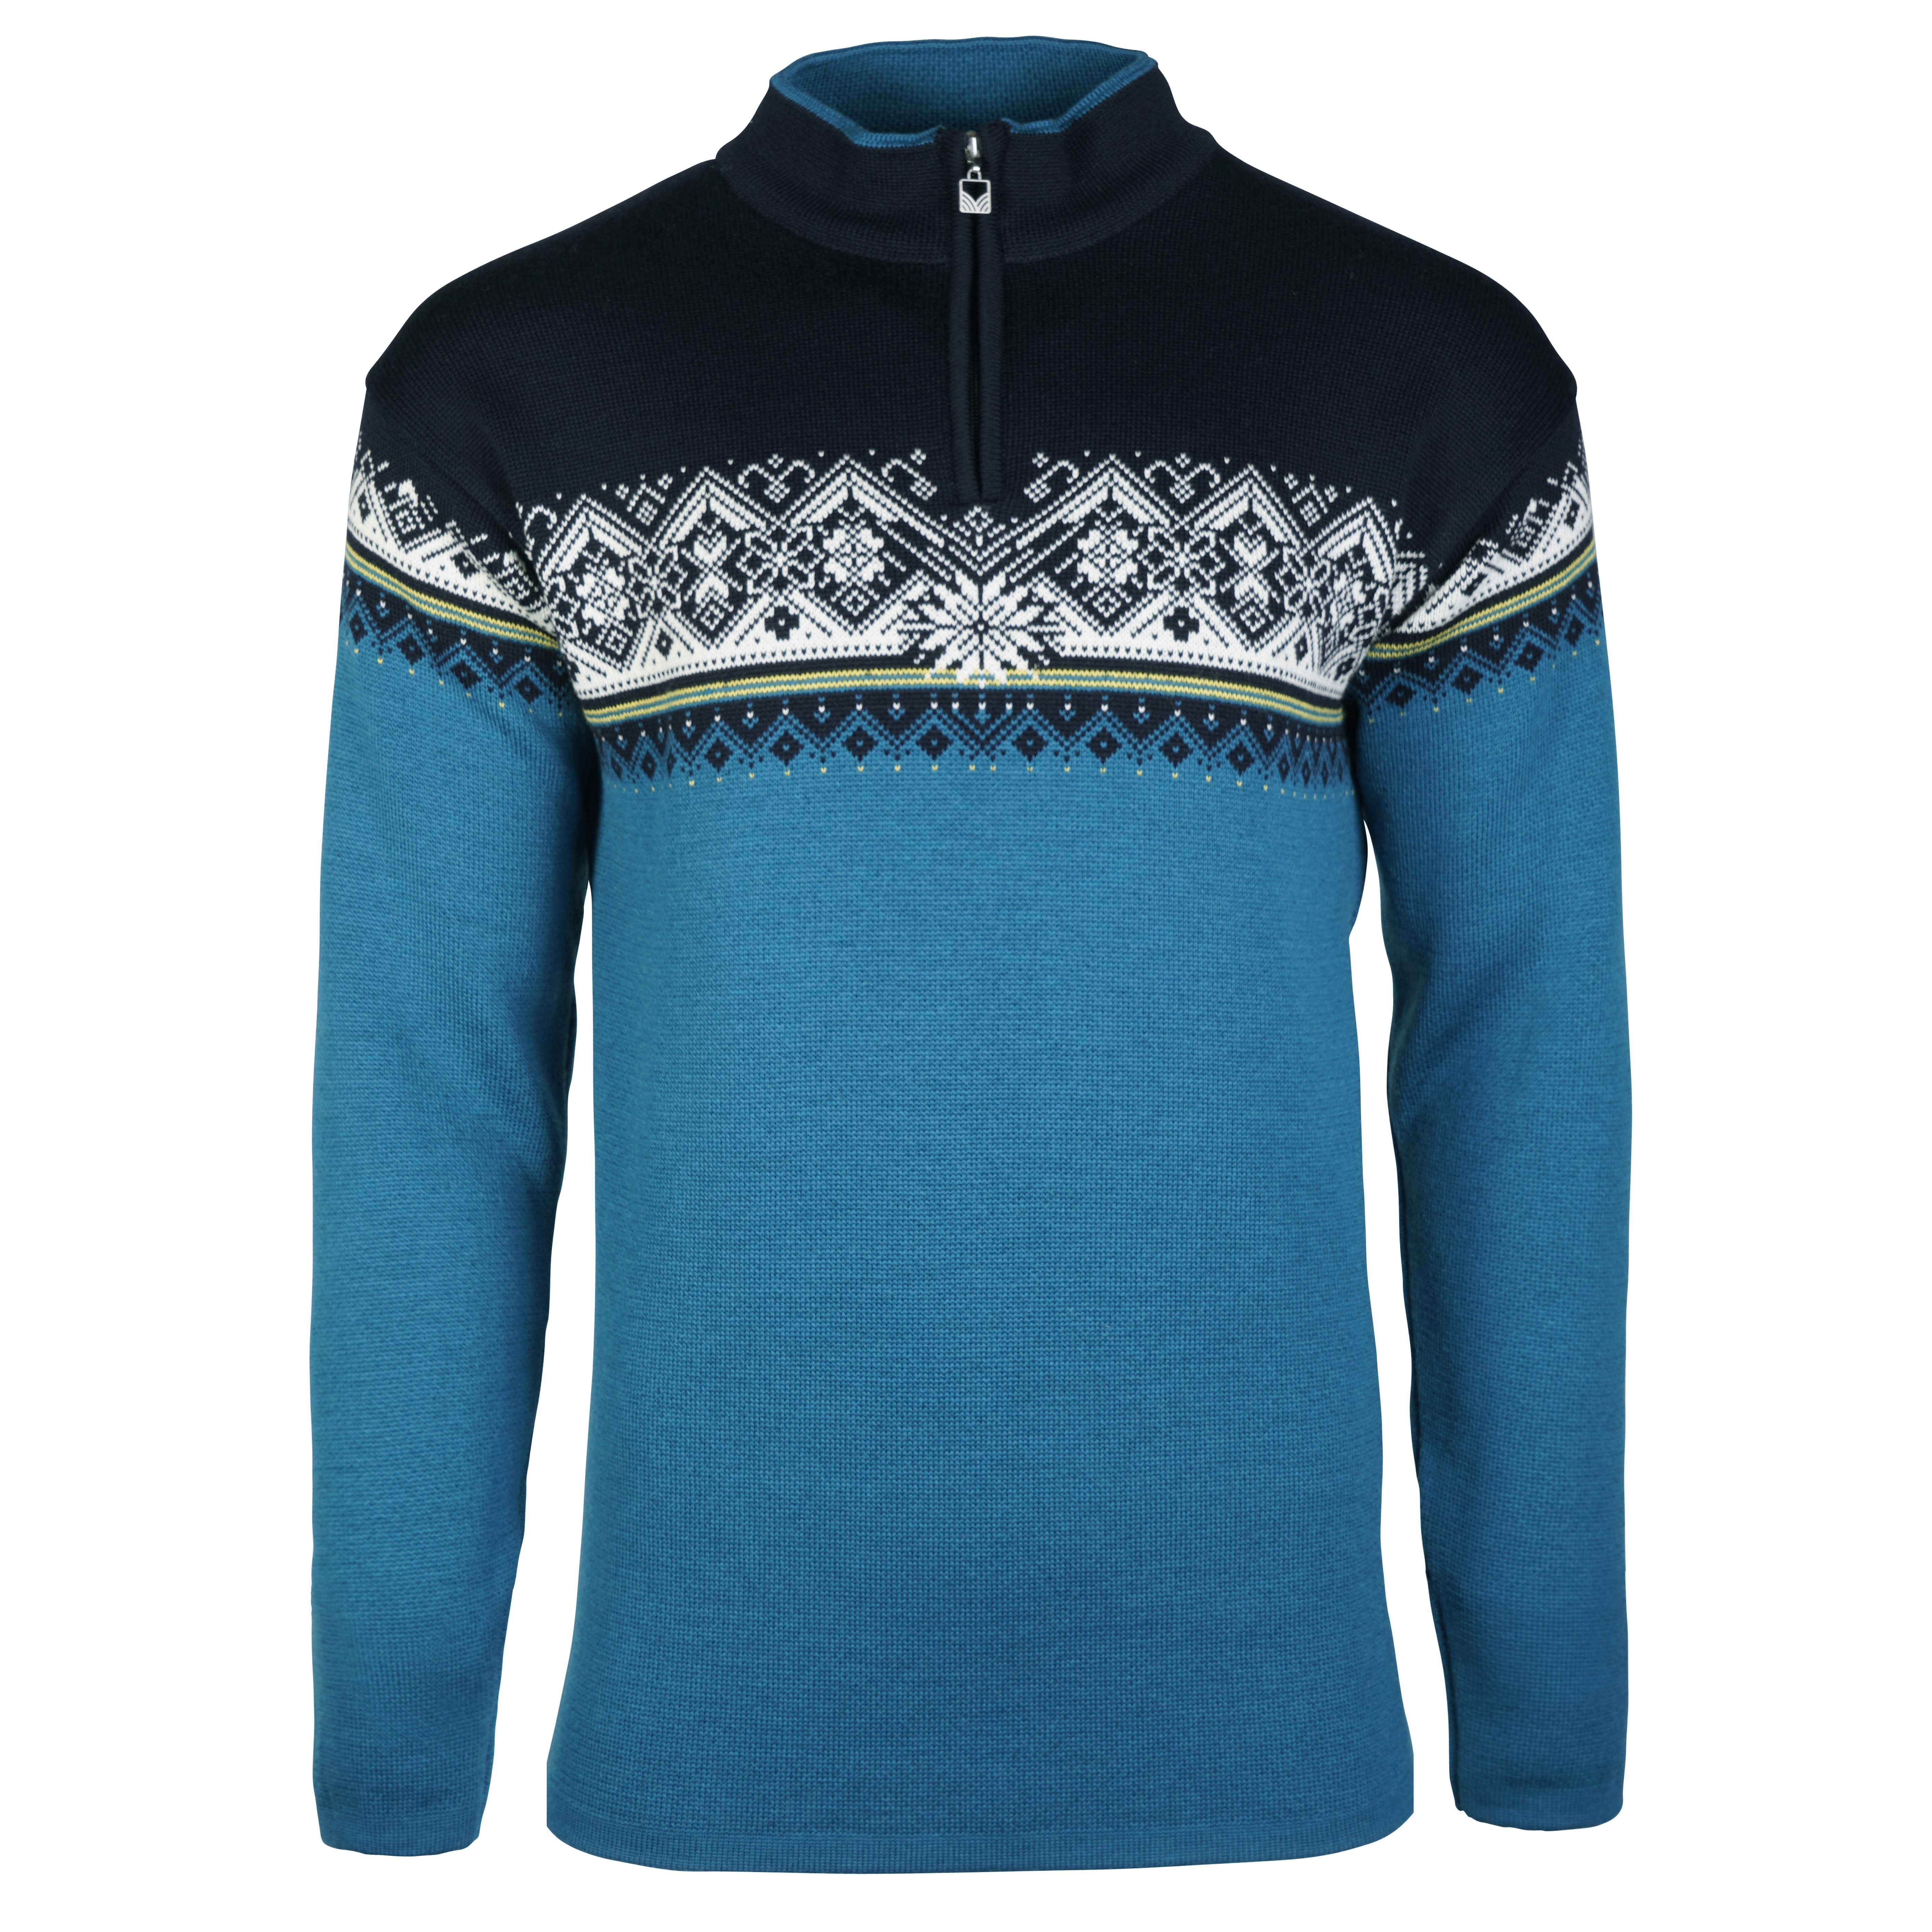 Køb Norway Moritz Men's Sweater fra Outnorth